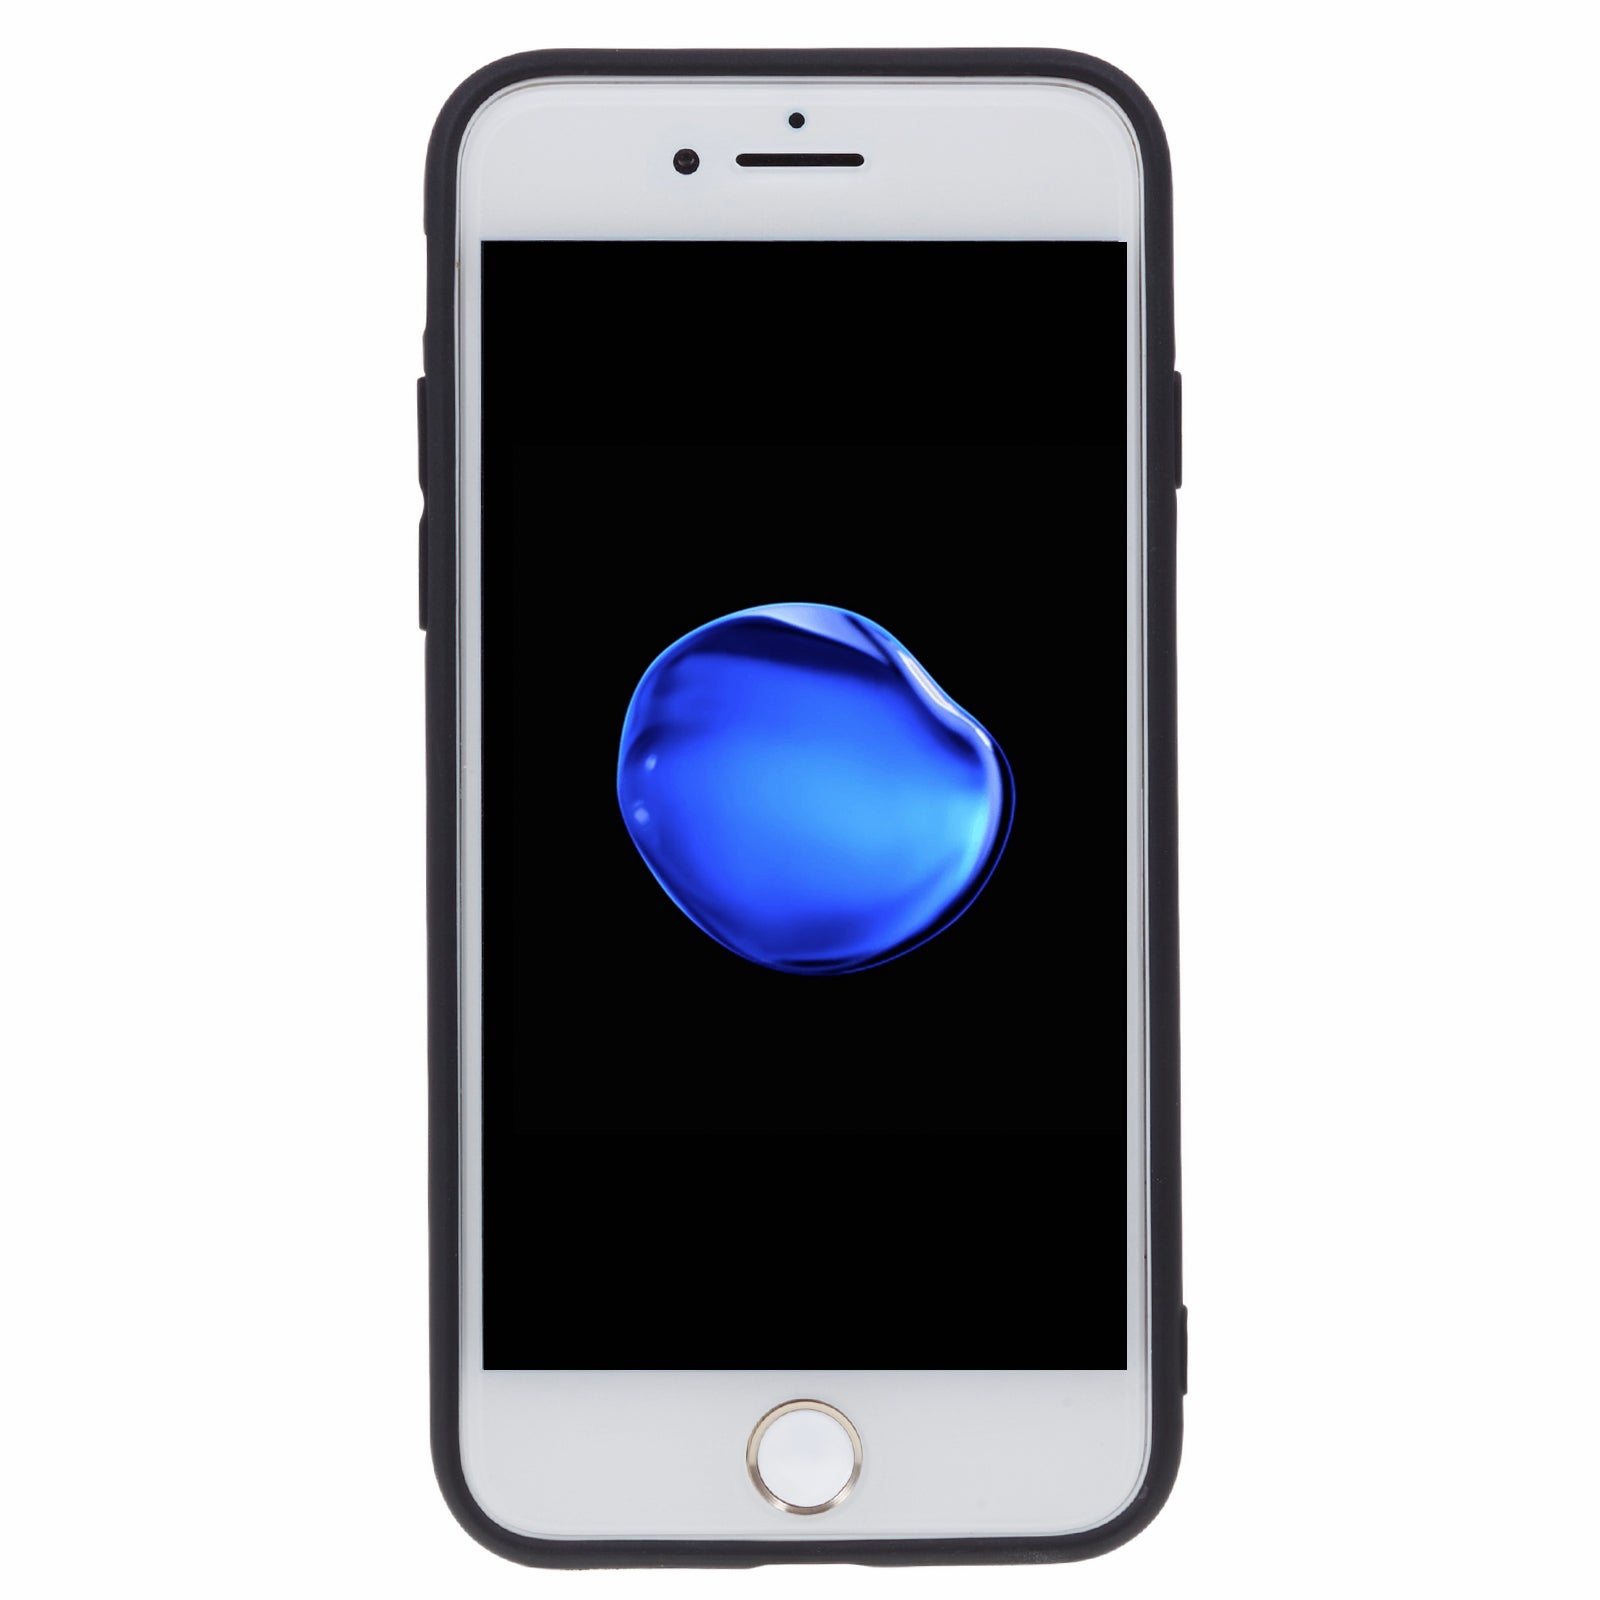 Uniqkart for iPhone 7 / 8 / SE (2020) / SE (2022) Candy Color Matte Phone Case Anti-scratch TPU Cover - Black